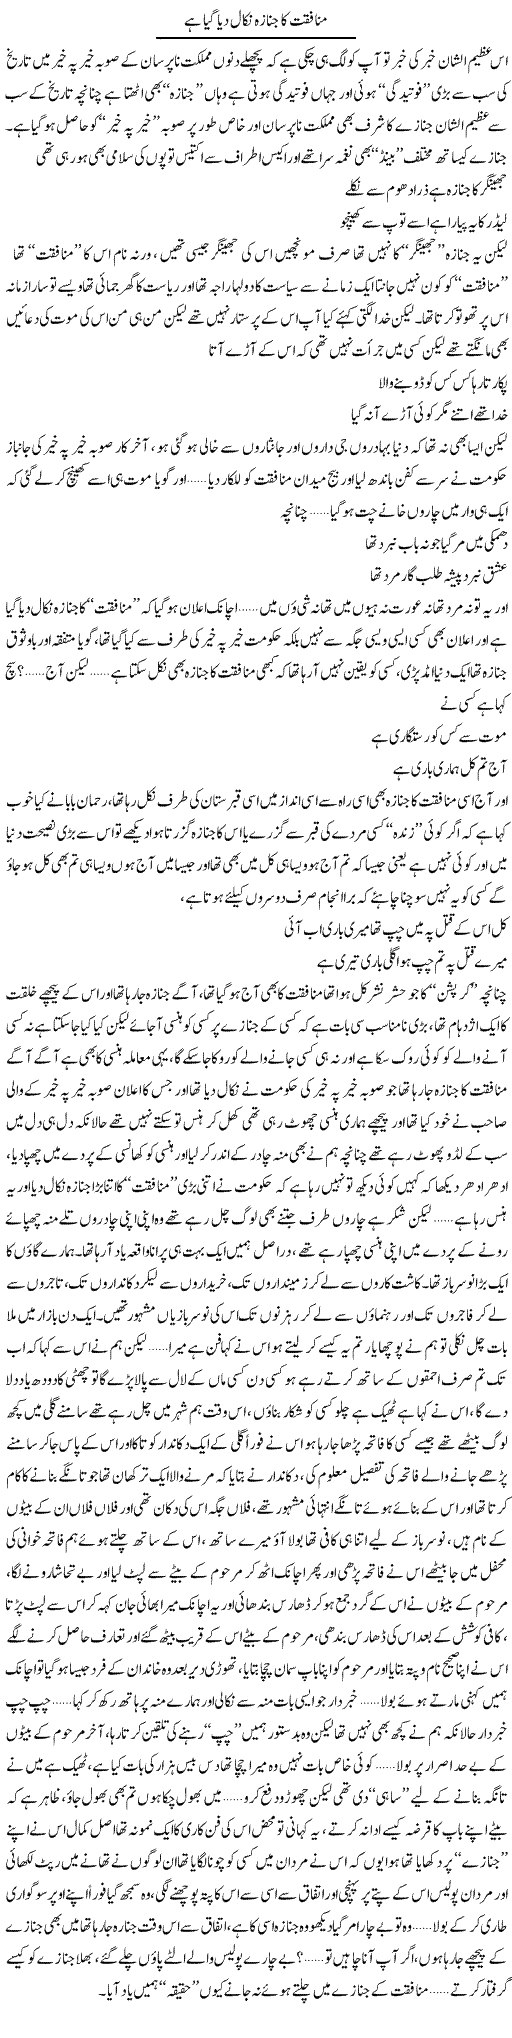 Munafiqat Ka Janaza Nikal Diya Gaya Hai | Saad Ullah Jan Barq | Daily Urdu Columns